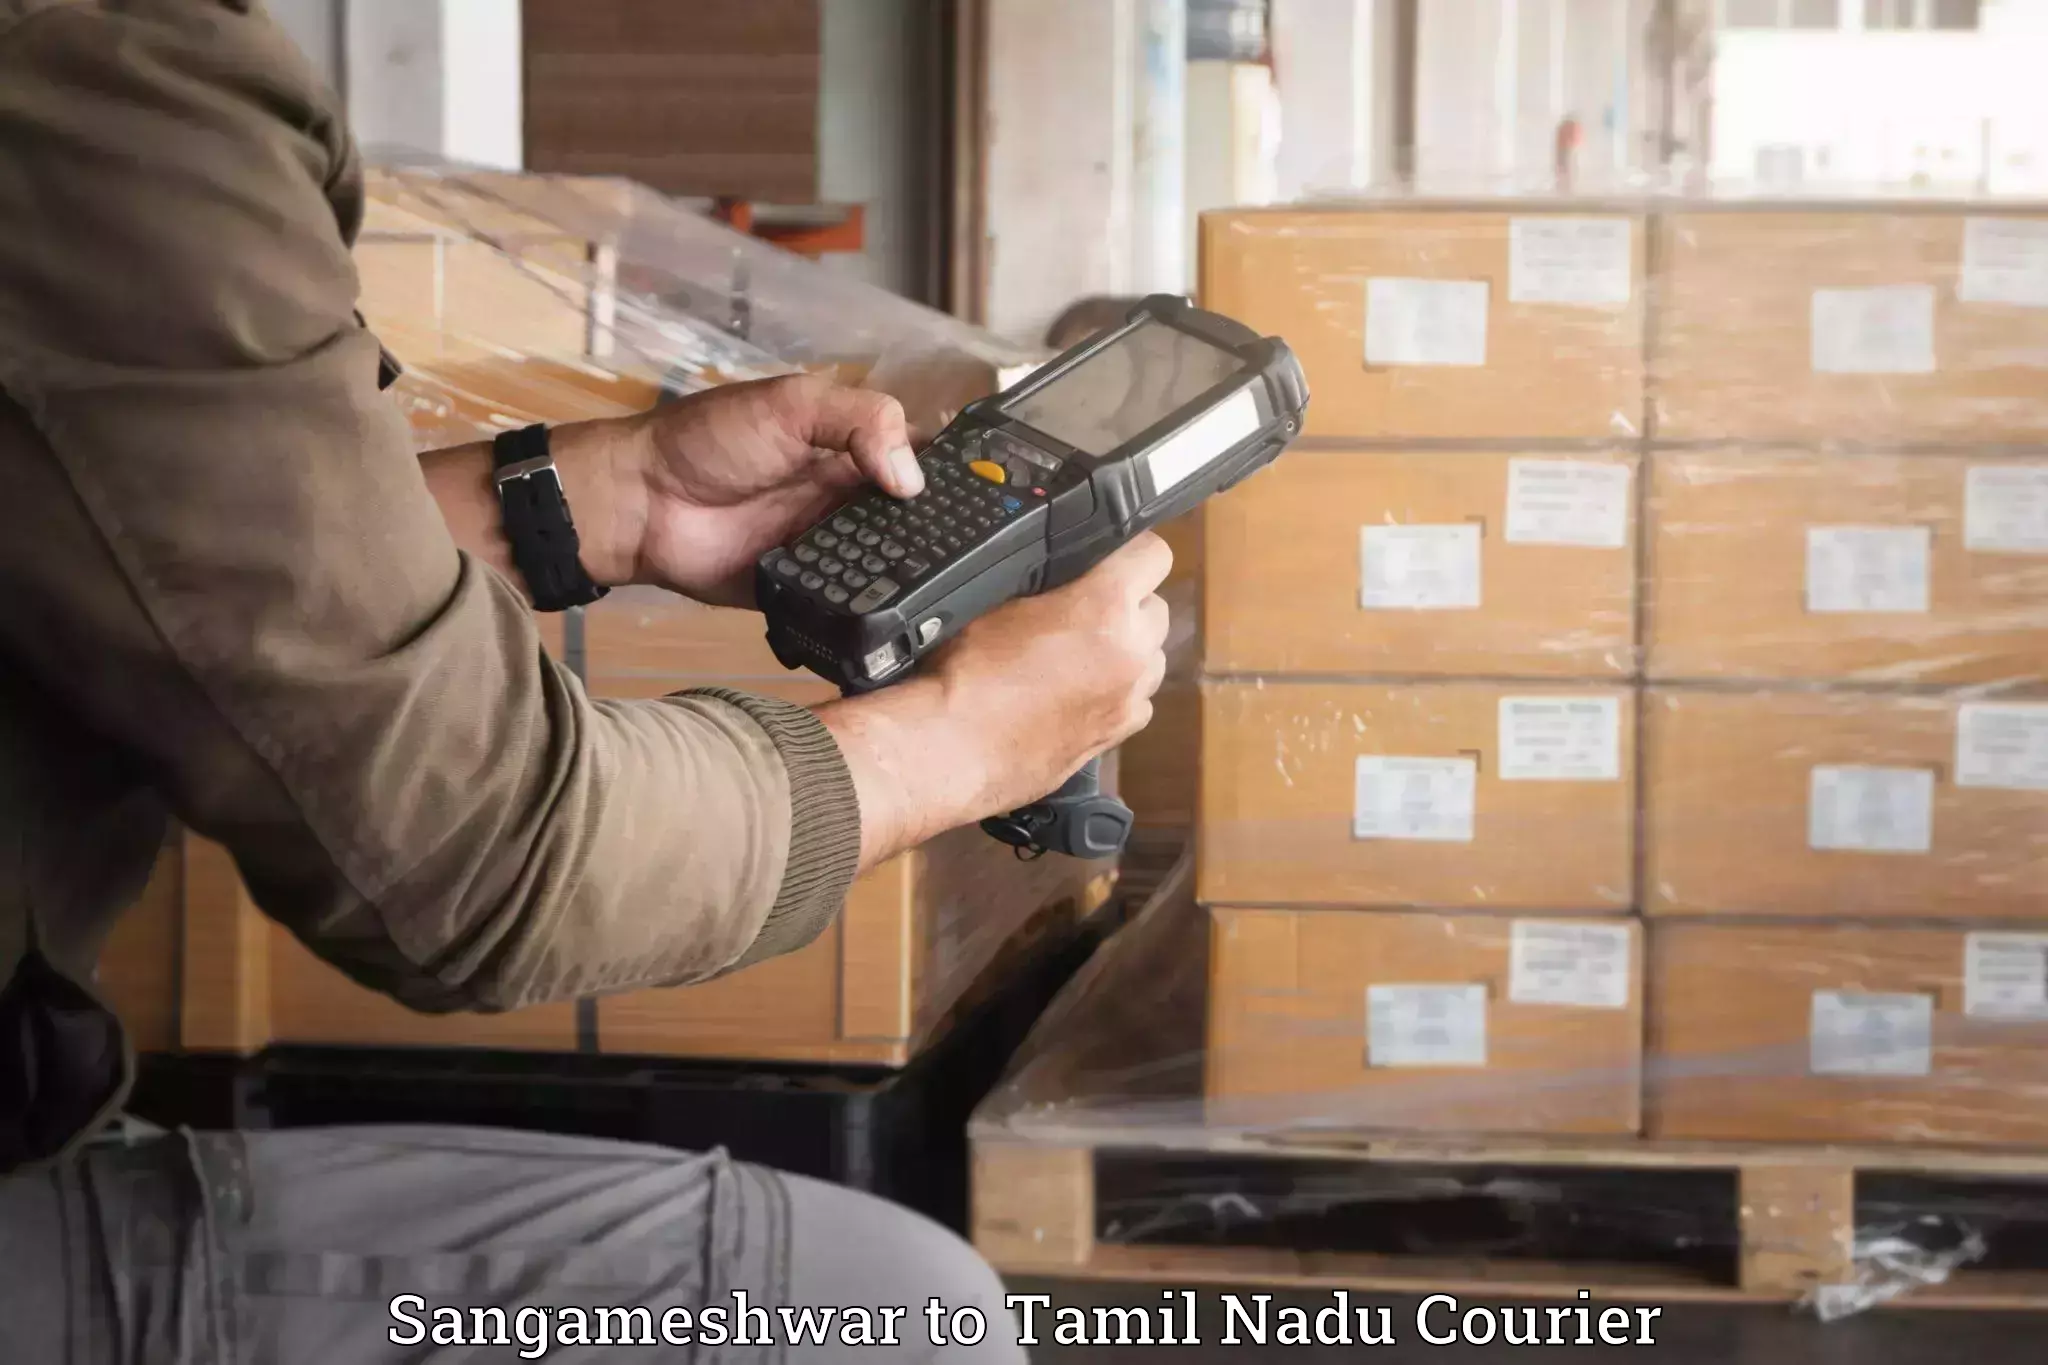 Luggage transit service Sangameshwar to Tamil Nadu